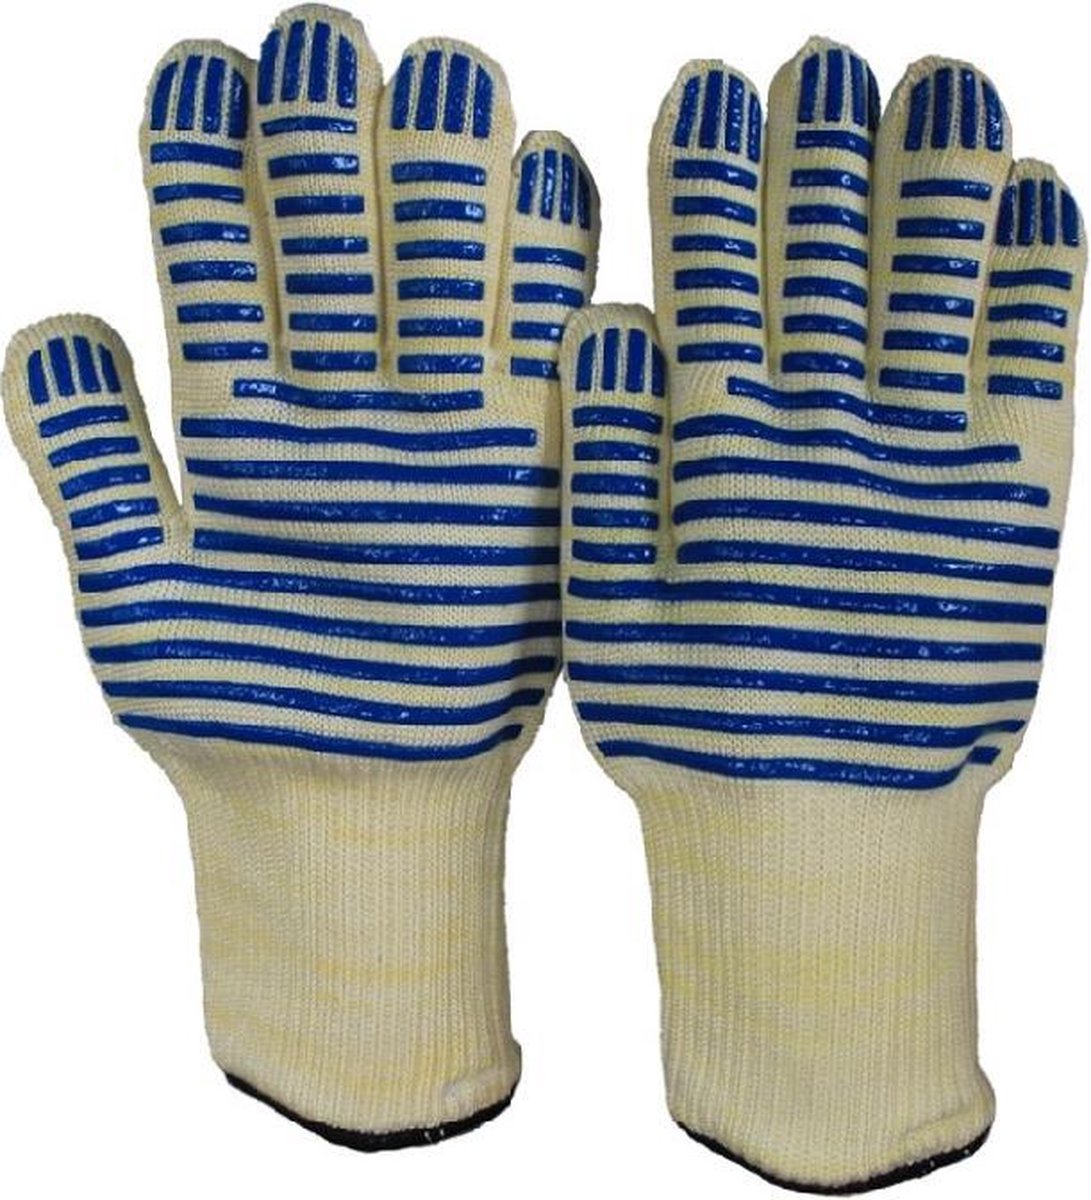 1 paar - Professionele oven handschoenen en BBQ handschoenen/ Tot 250 °C en 540F hitte- en vlambestendig/ One size fits all/ Geschikt voor de vaatwasser - Merkloos